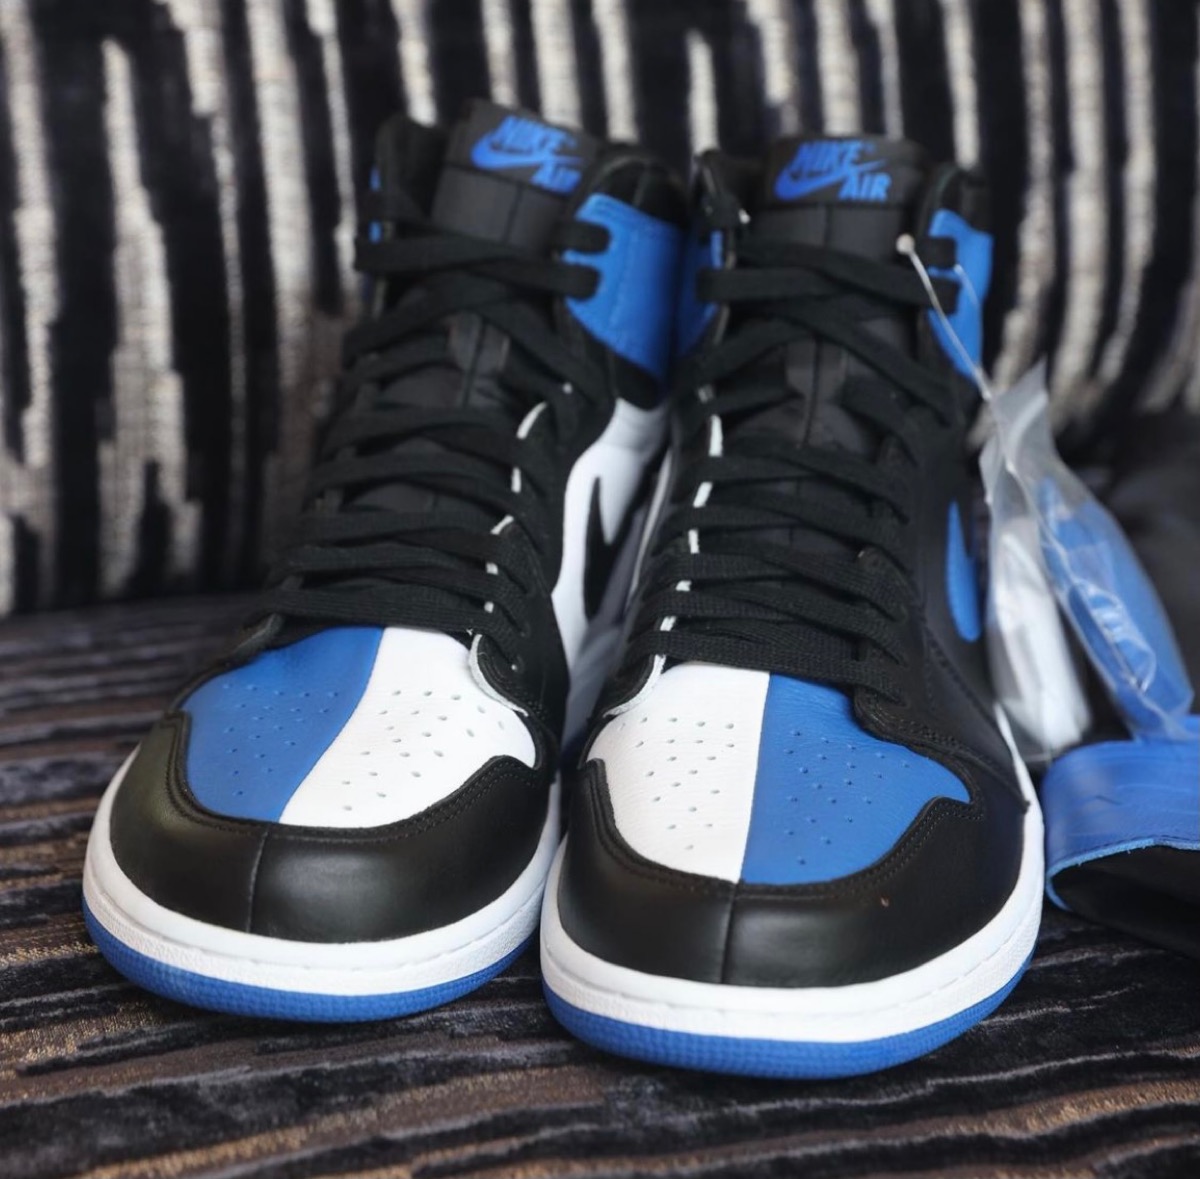 DJ Khaledが Nike Air Jordan 1 Retro High OG “Homage to Home”の 